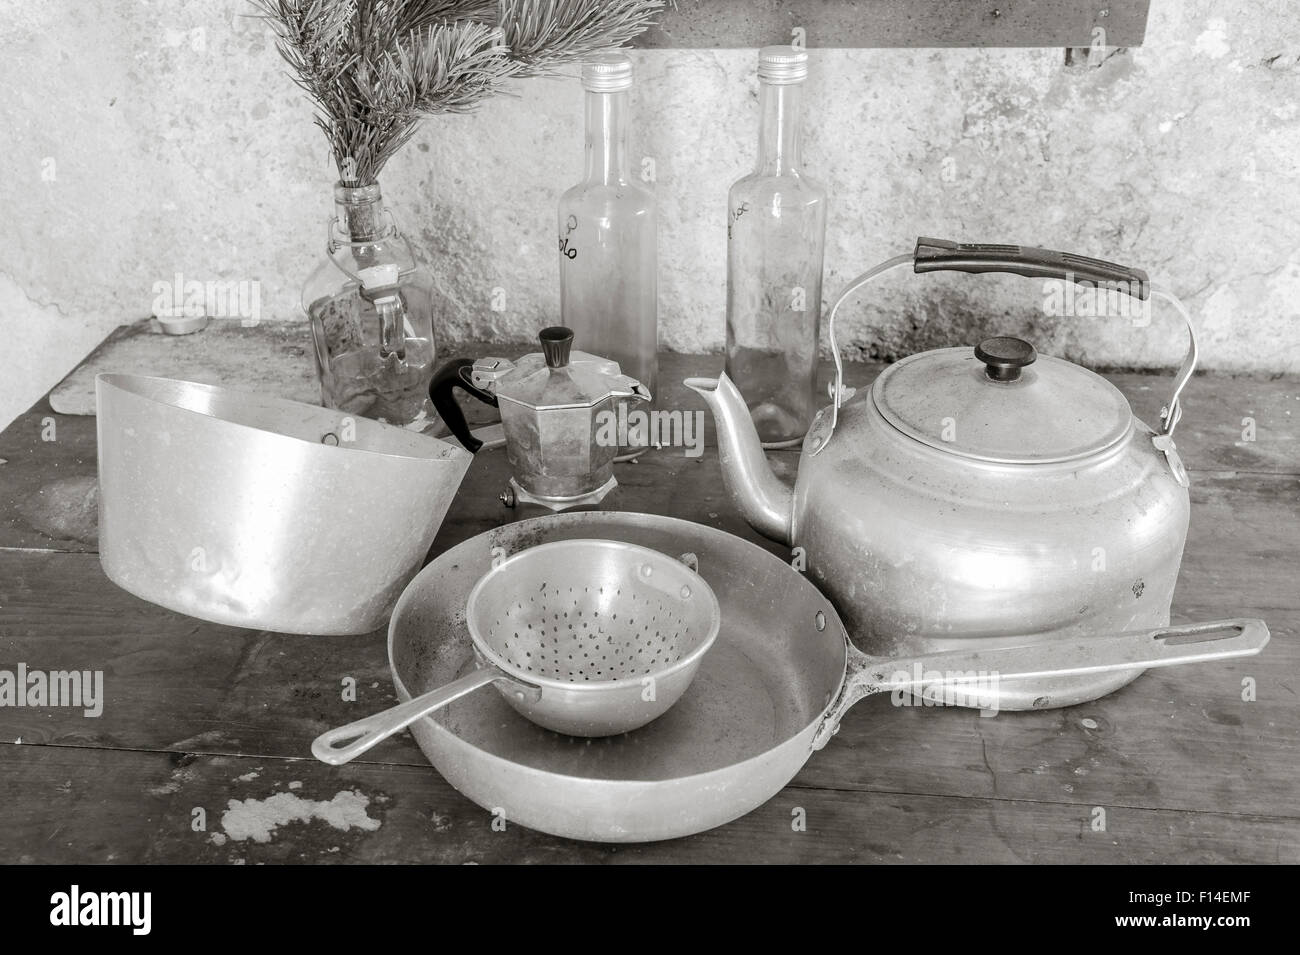 Vieux objets sur une table de cuisine : casseroles, tamis, électrique, coffepot et trois bouteilles Banque D'Images